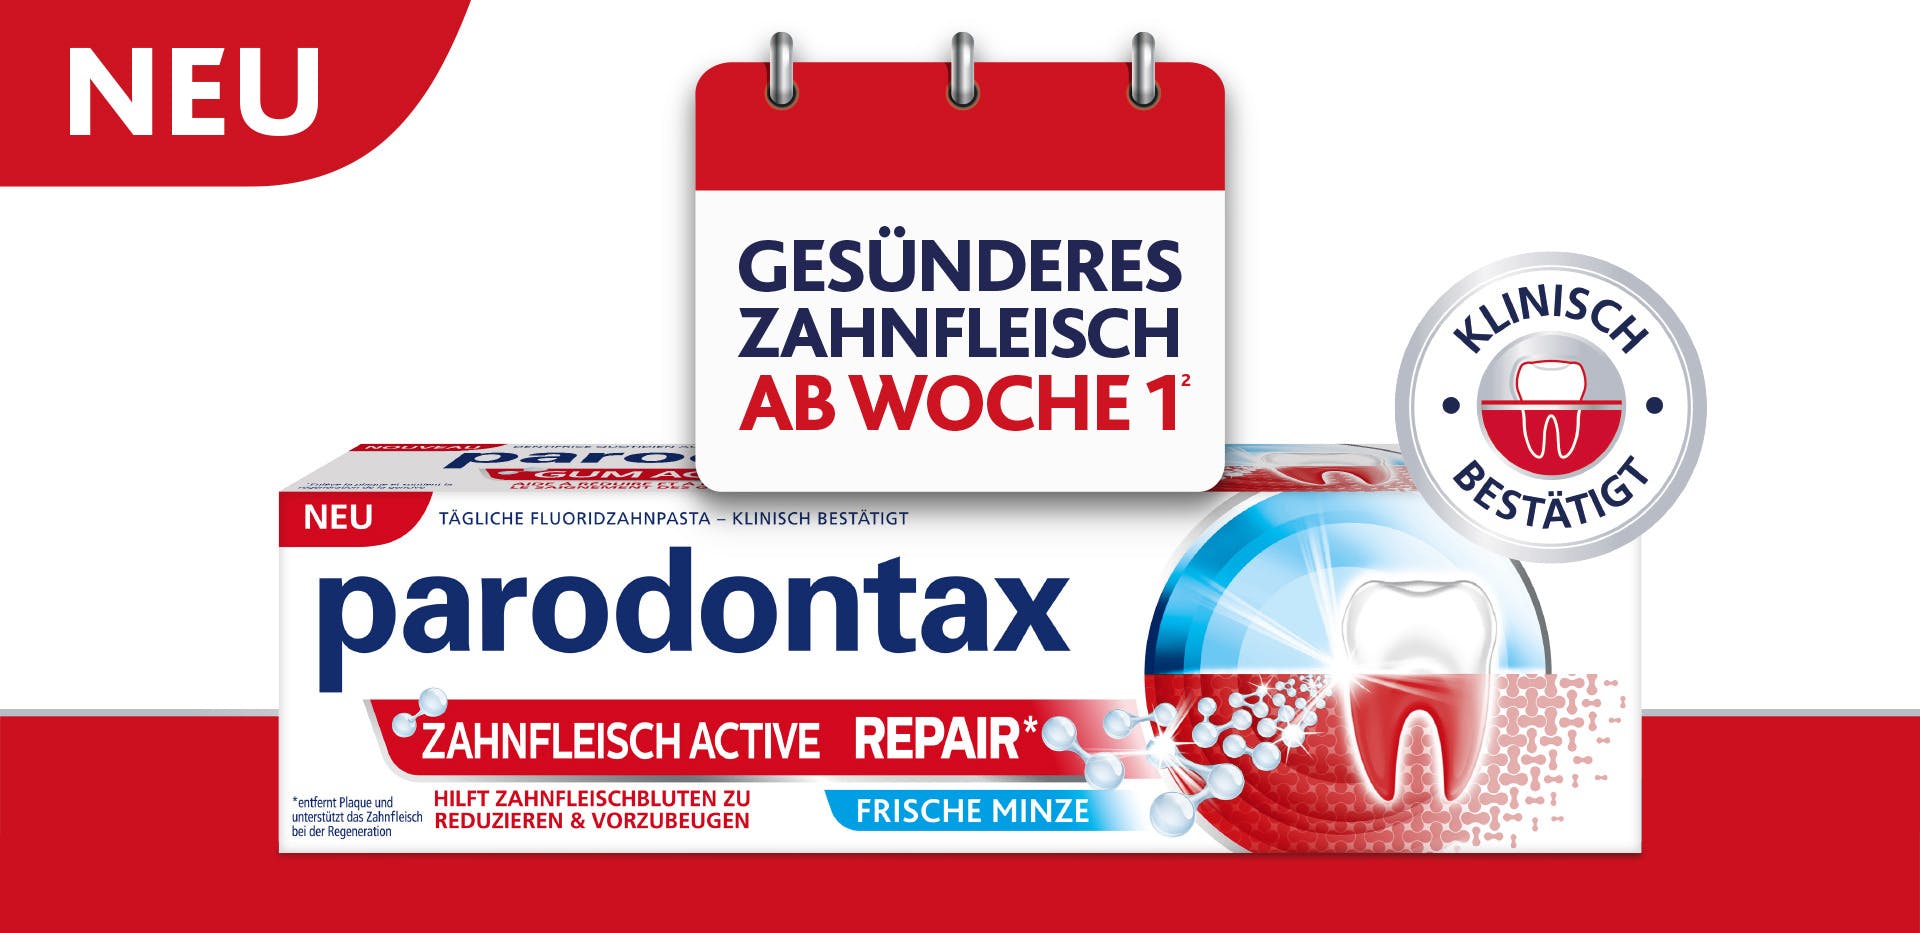 Produktverpackung von parodontax mit den folgenden Hinweisen: Gesünderes Zahnfleisch ab Woche 1